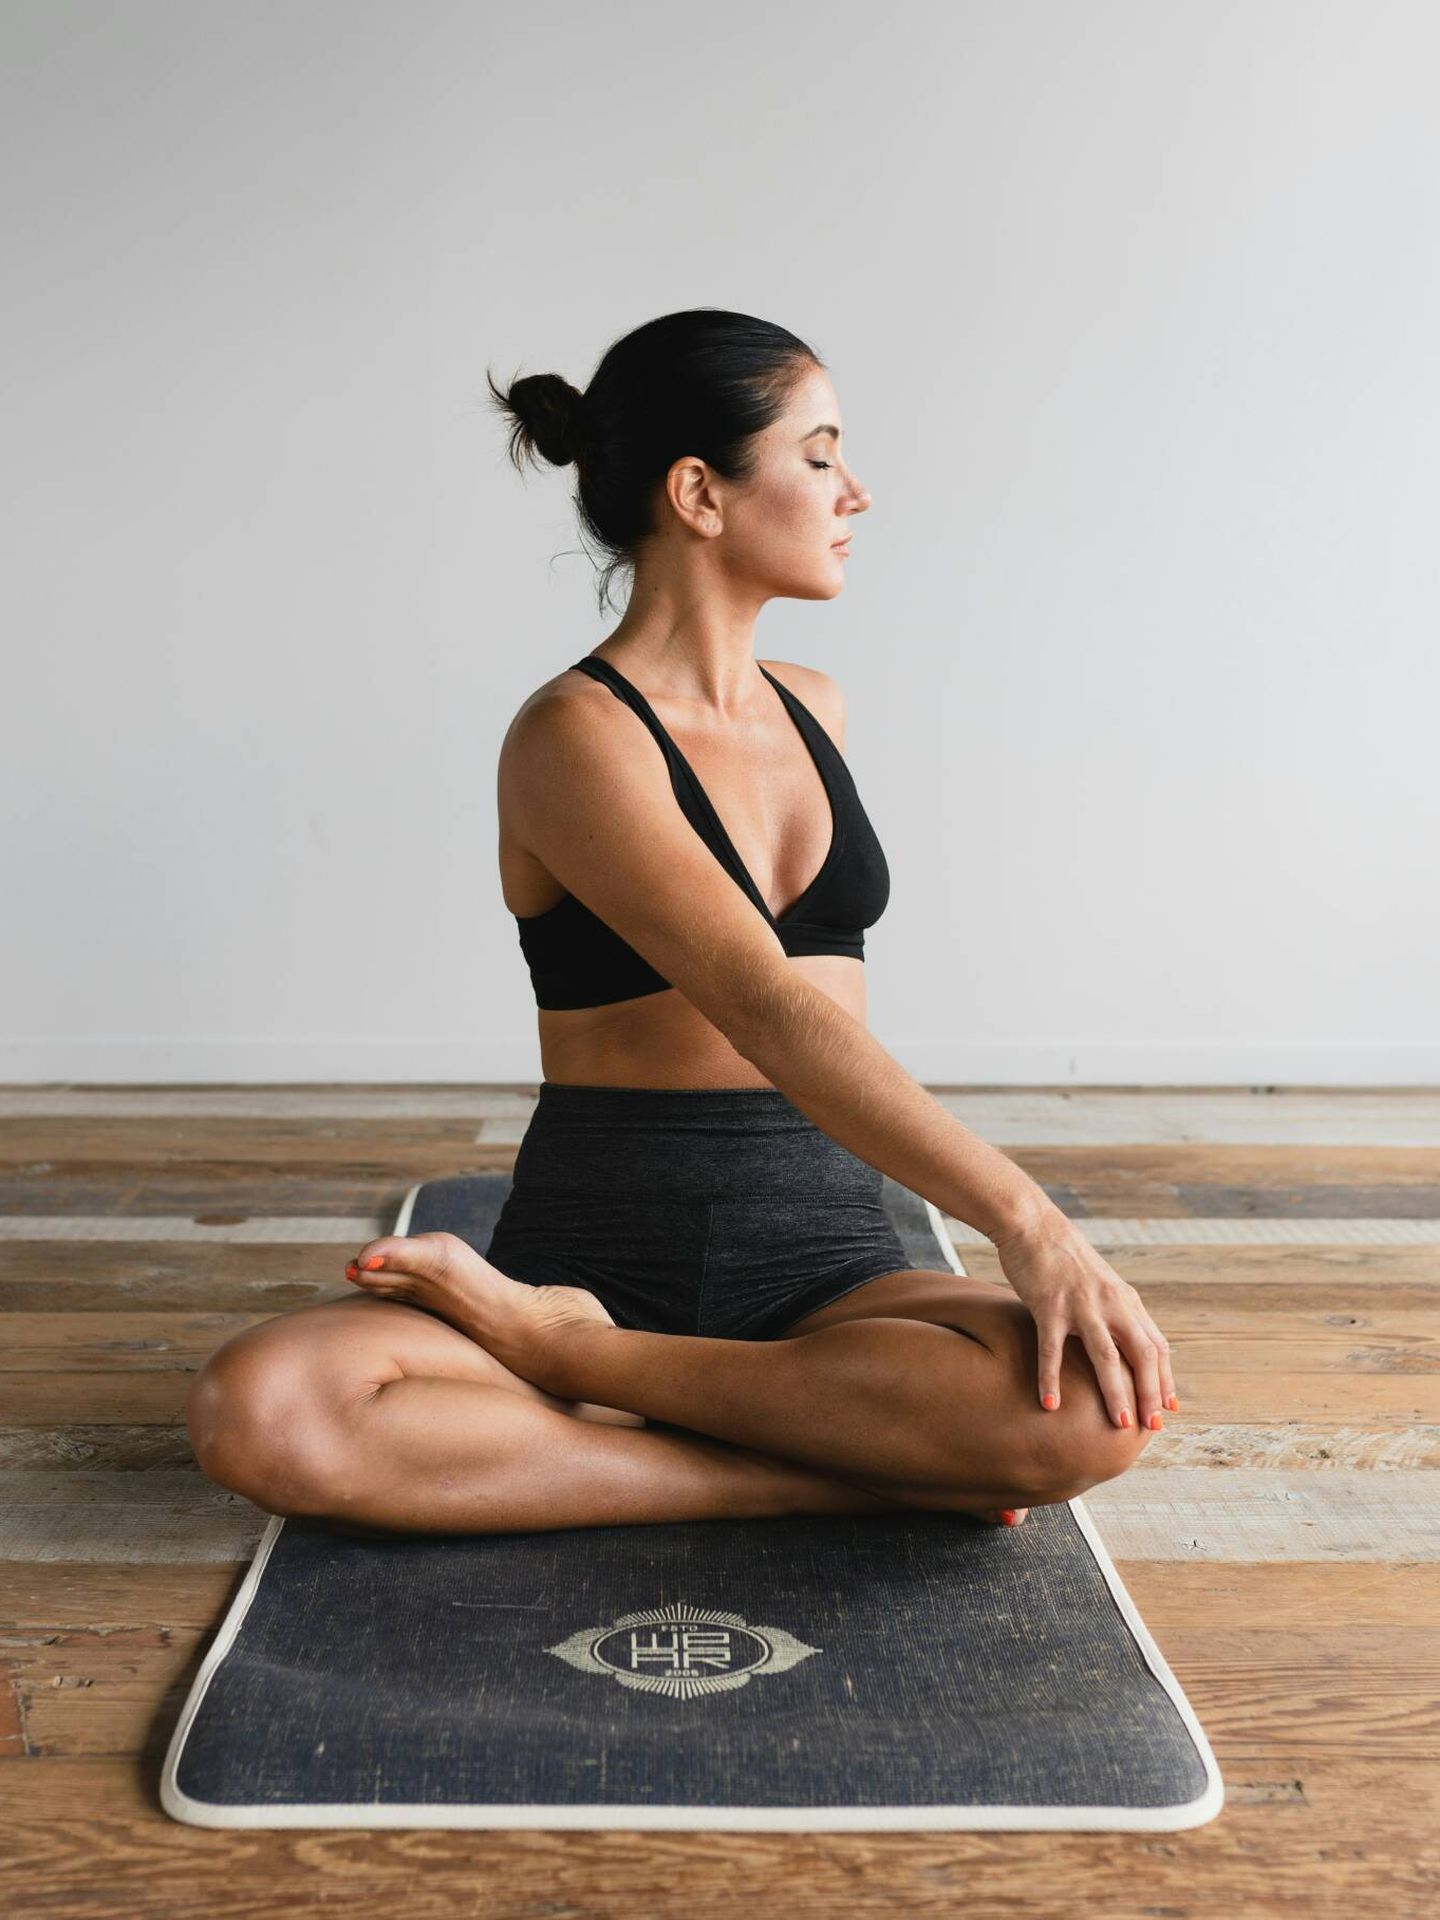 Practicar yoga te ayuda a mejorar tu flexibilidad. (Unsplash / Dane Wetton)